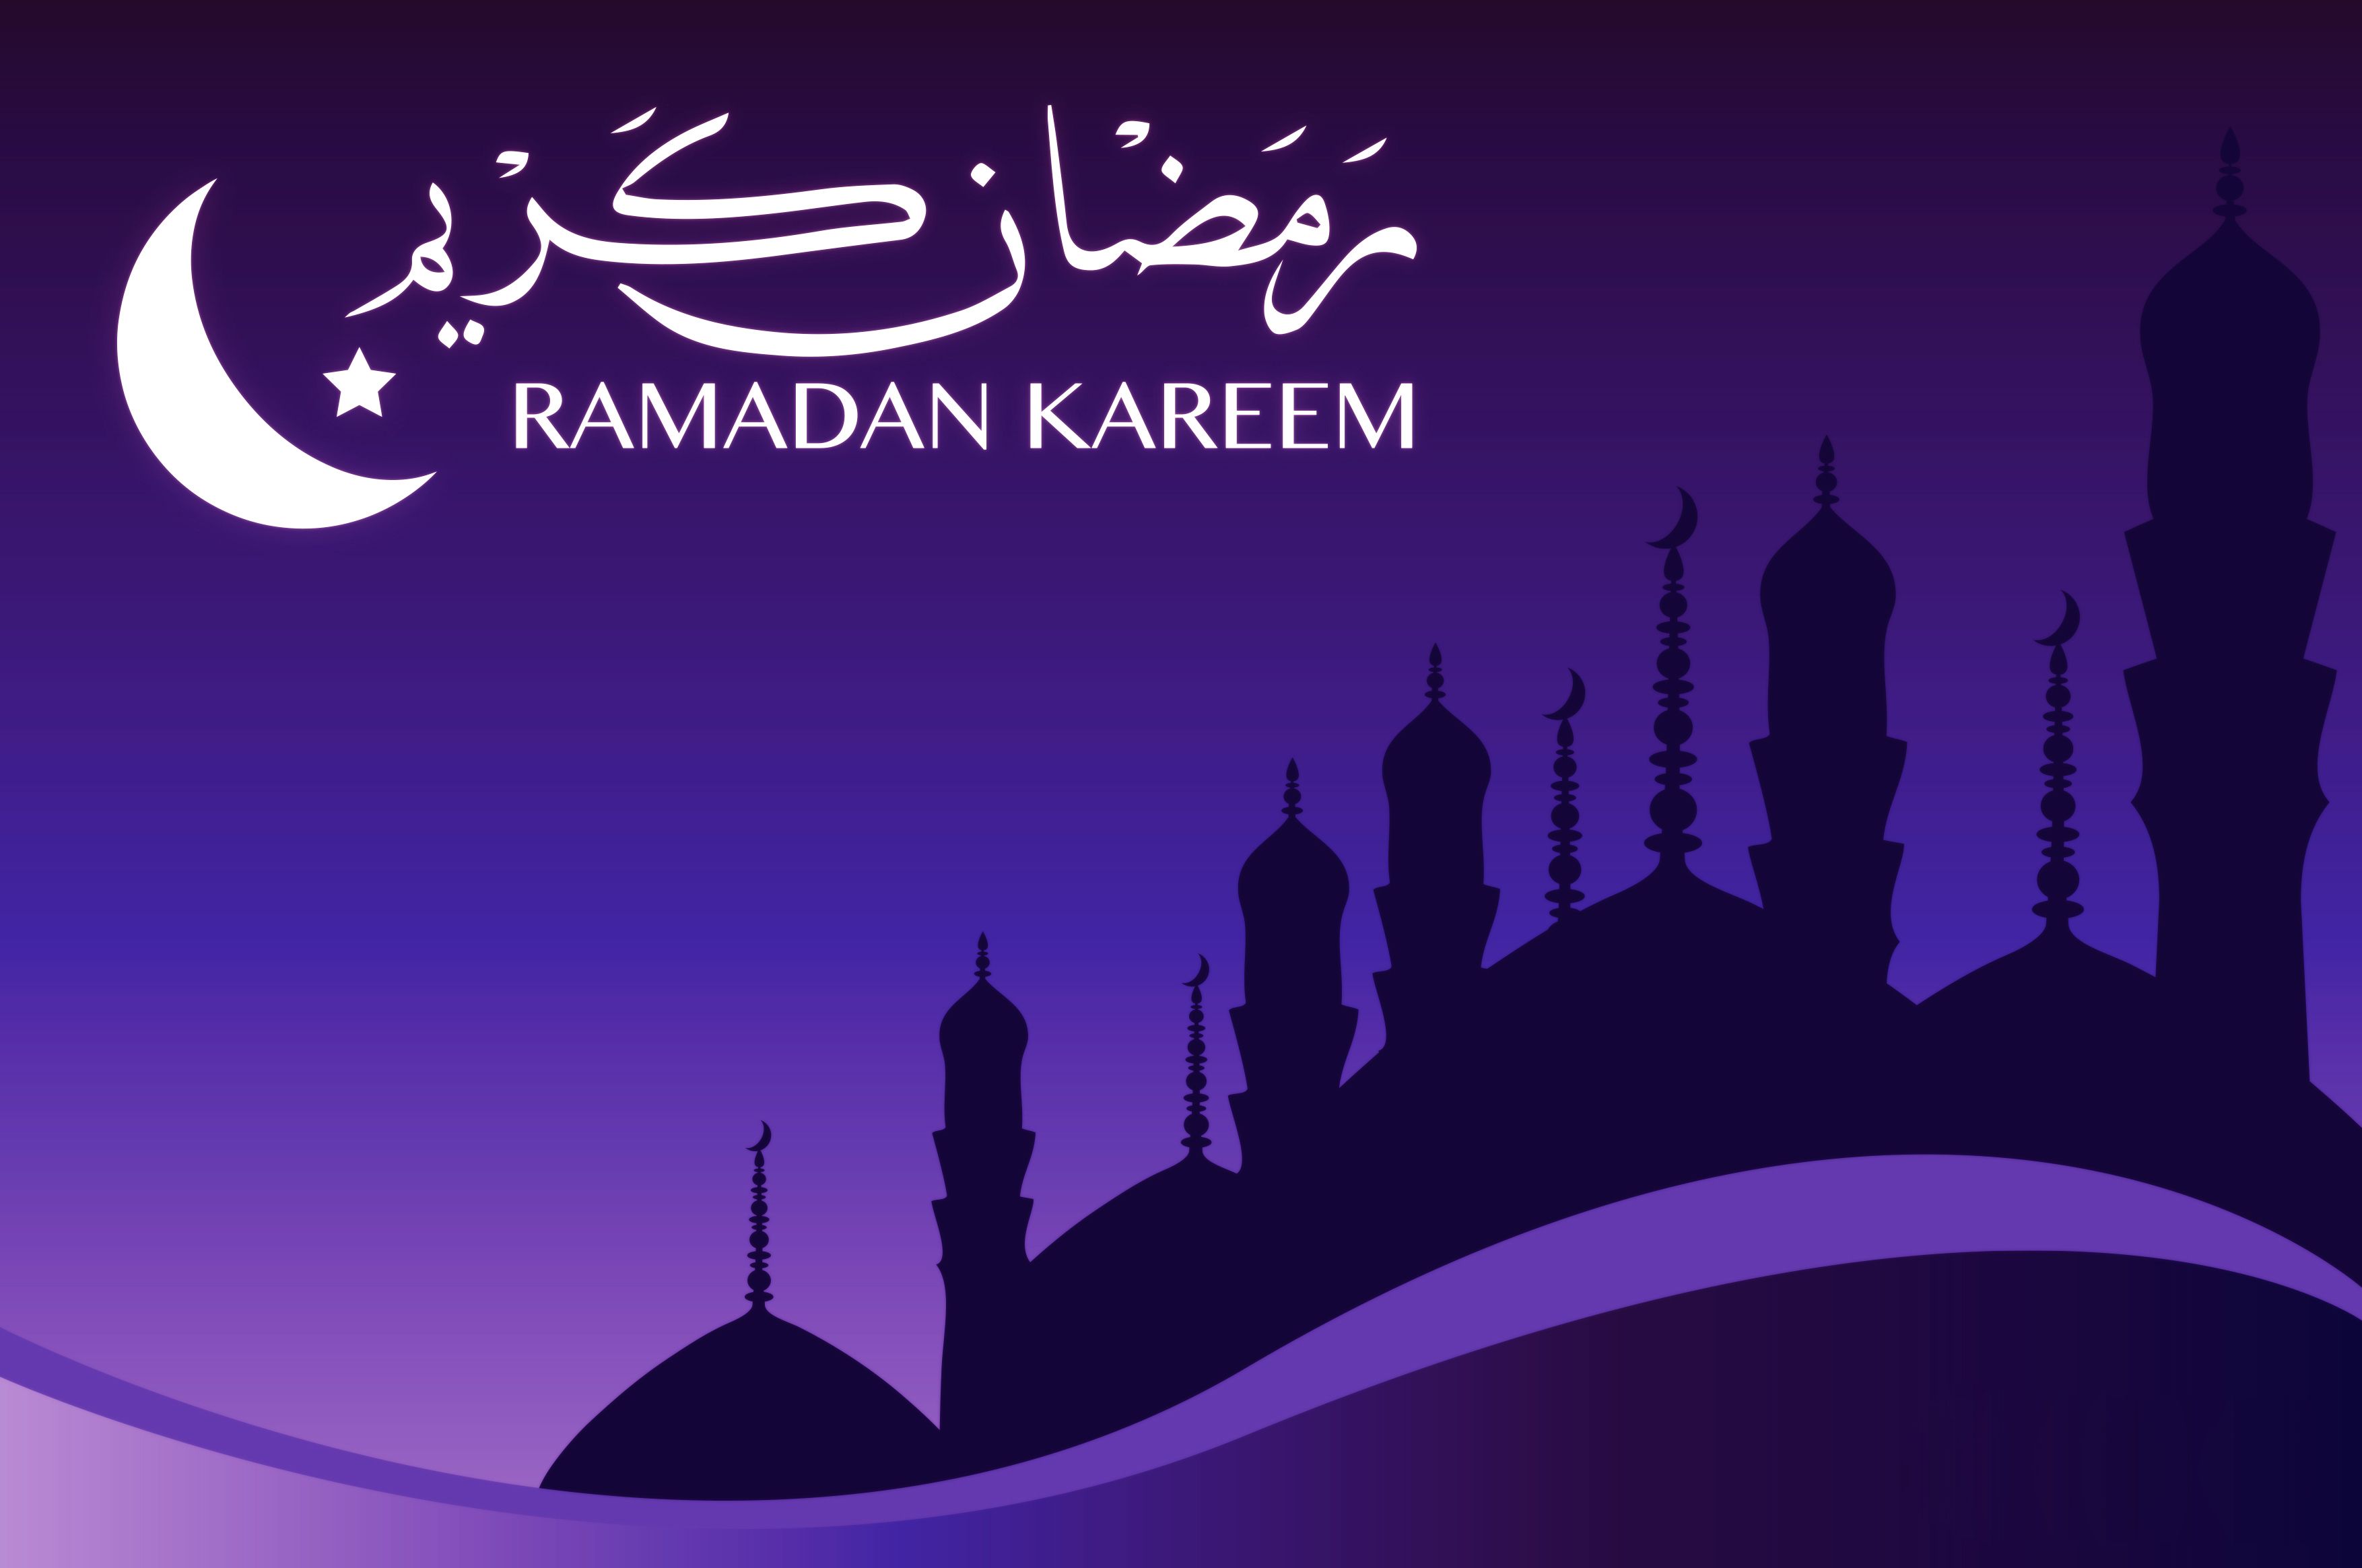 Ramadan Mubarak Ultra HD 4K Wallpaper 2018 Download Free. Ramadan image, Ramzan mubarak image, Ramadan kareem